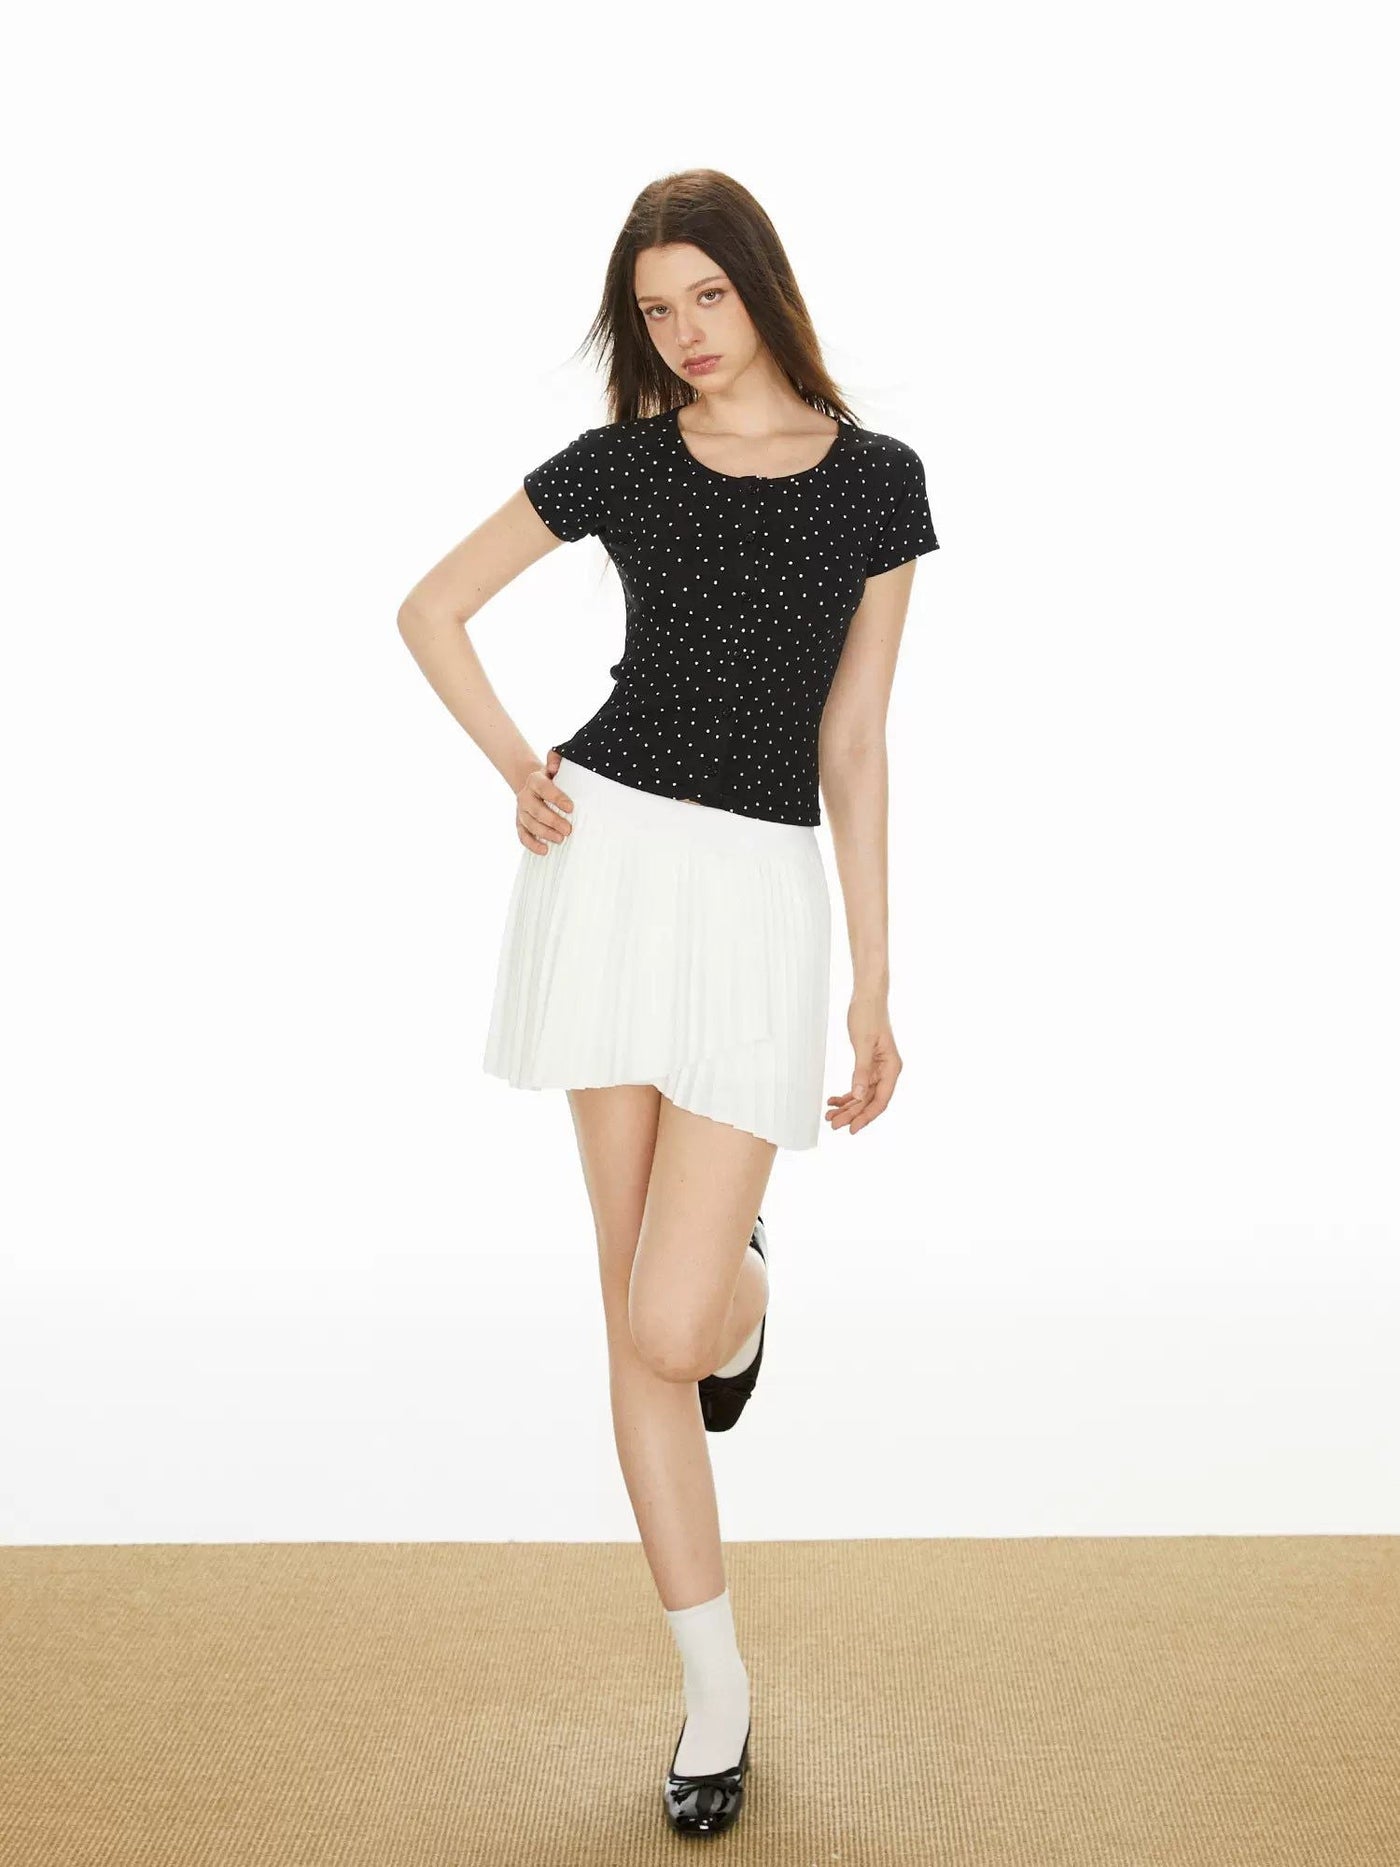 Ada Polka Dots Button-Down T-Shirt-korean-fashion-T-Shirt-Ada's Closet-OH Garments